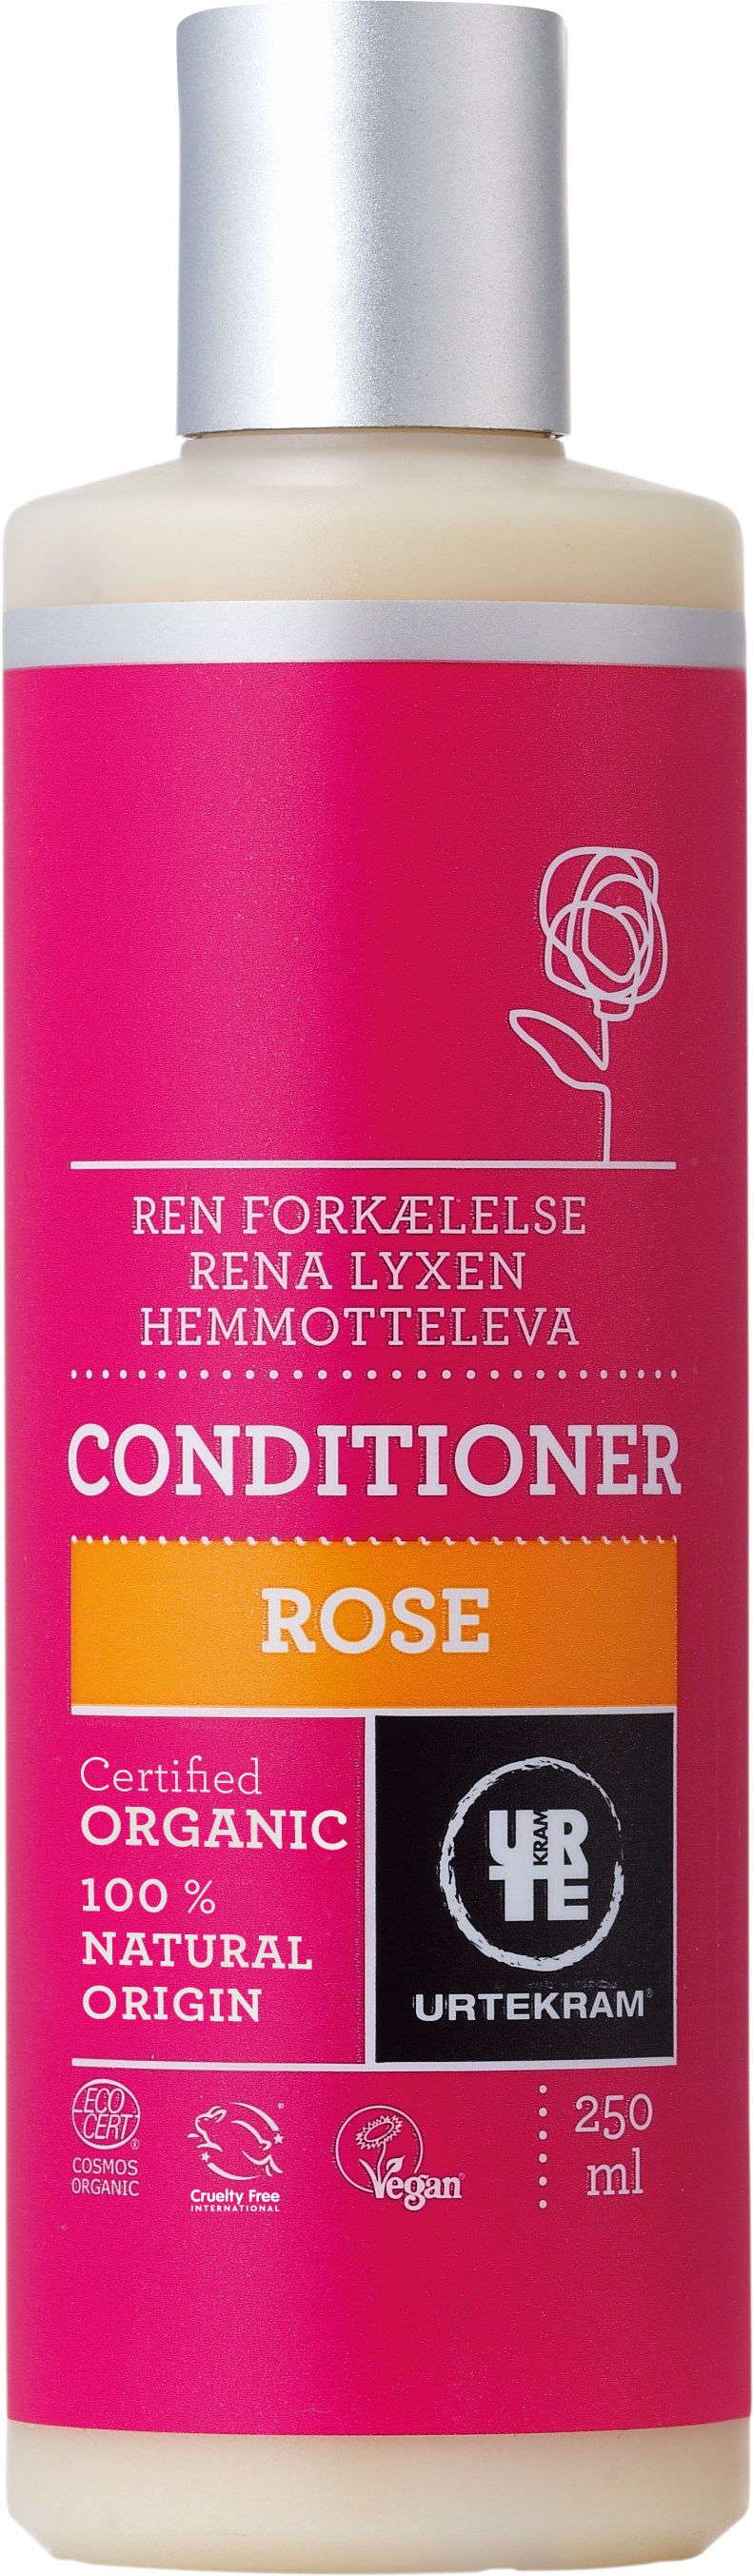 Urtekram Rose Conditioner 250ml